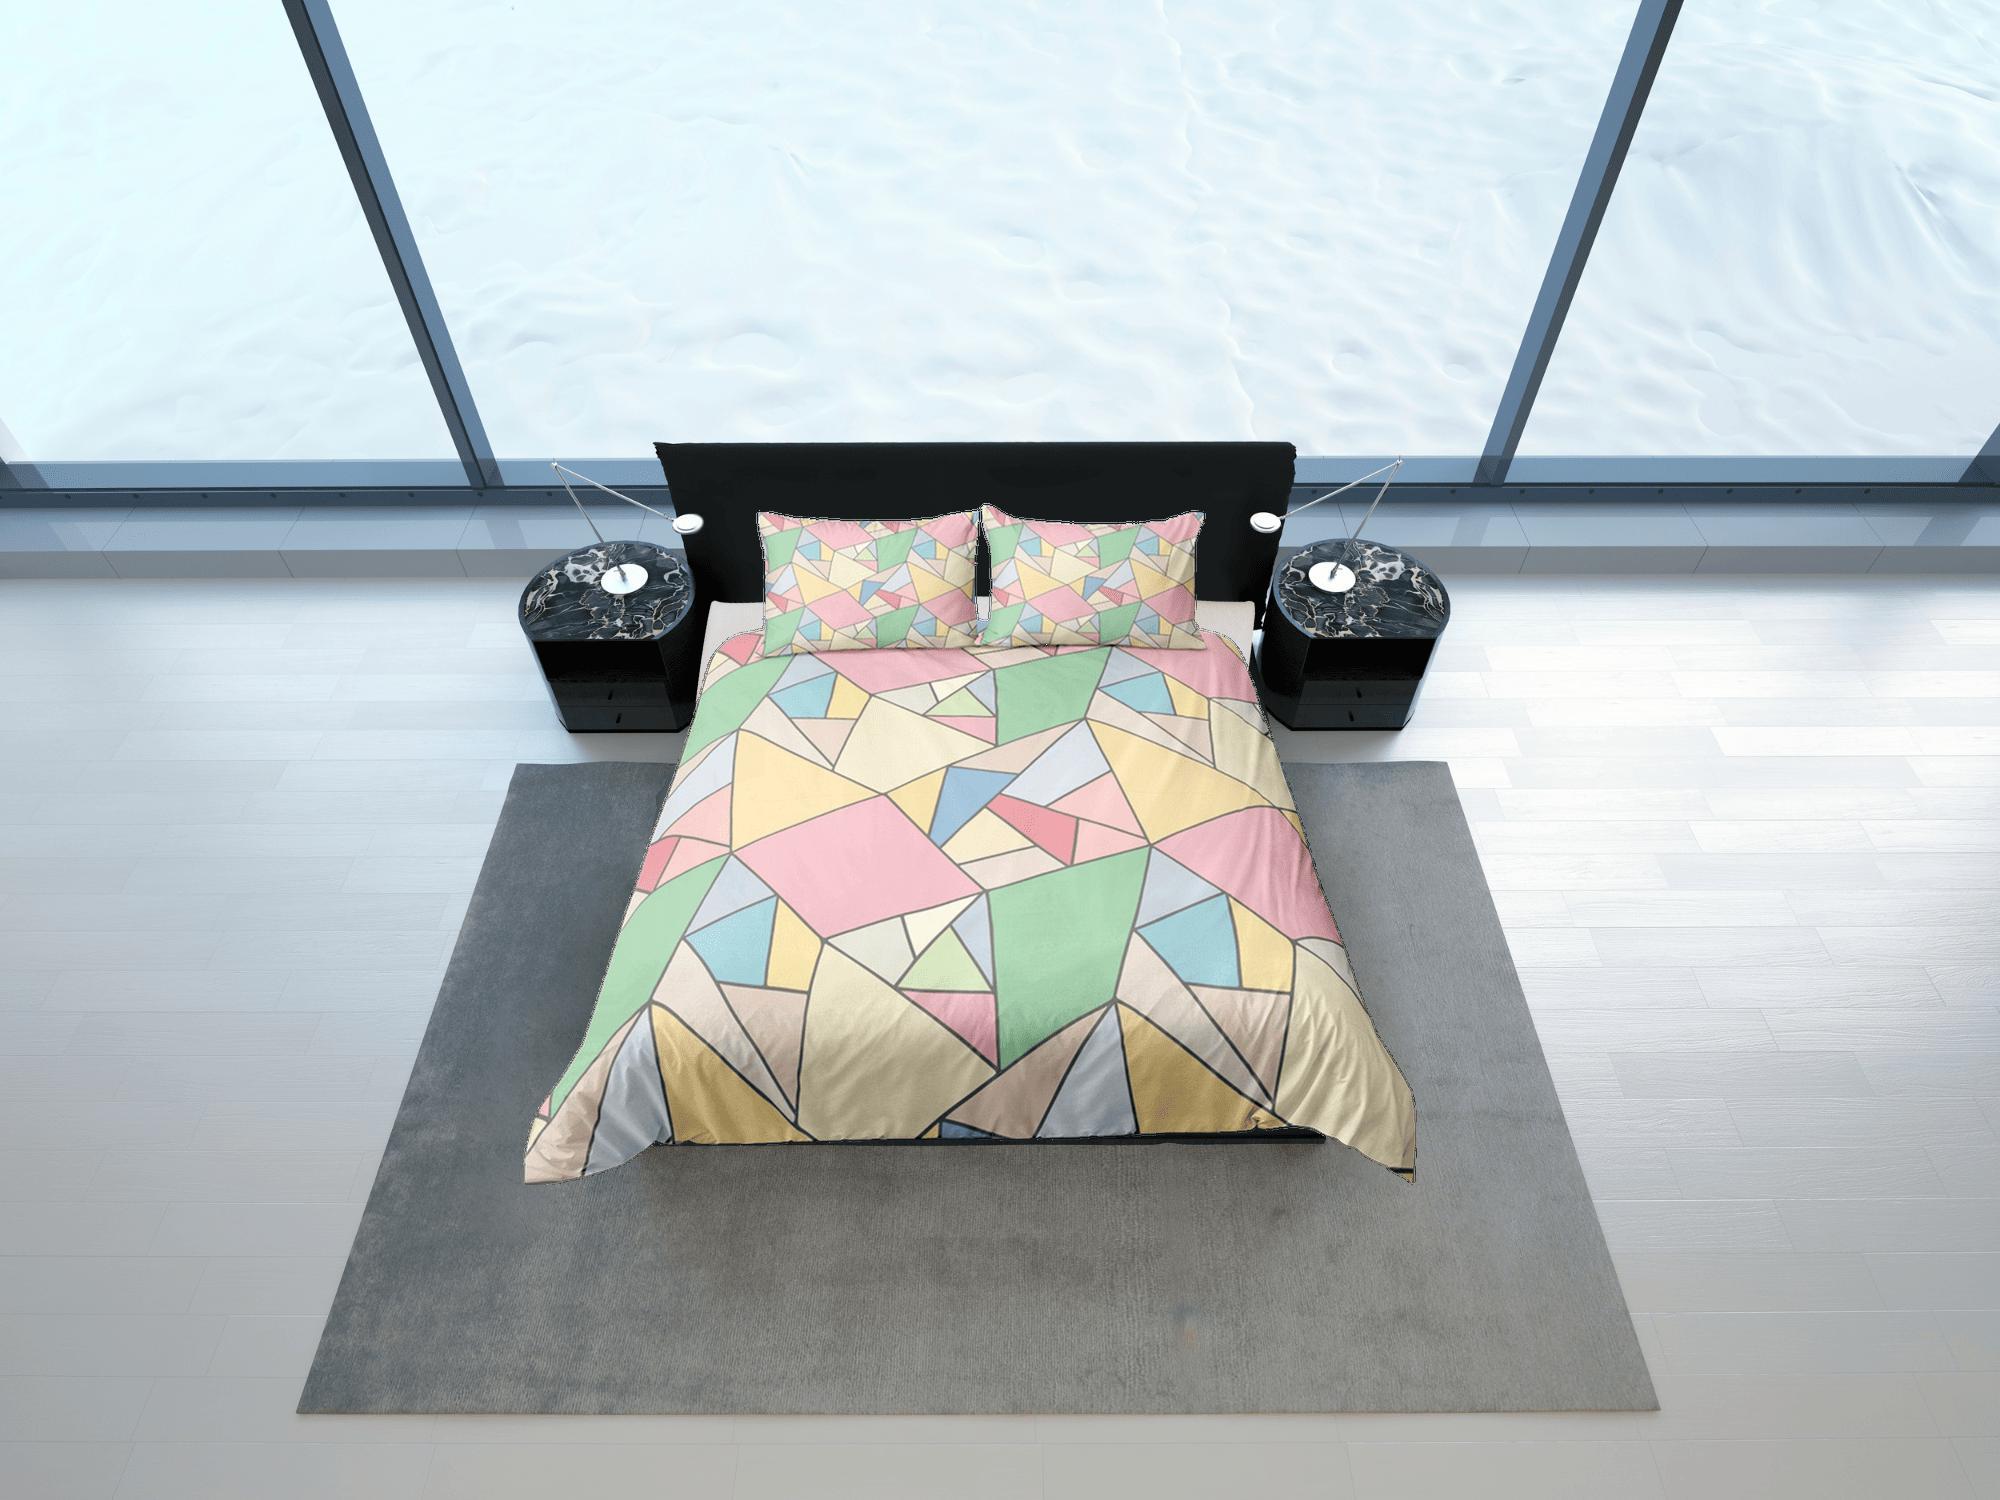 daintyduvet Modern Geometric Rainbow Duvet Cover Colorful Dorm Bedding Set Full Abstract Design King Duvet Cover Queen Duvet Bedspread